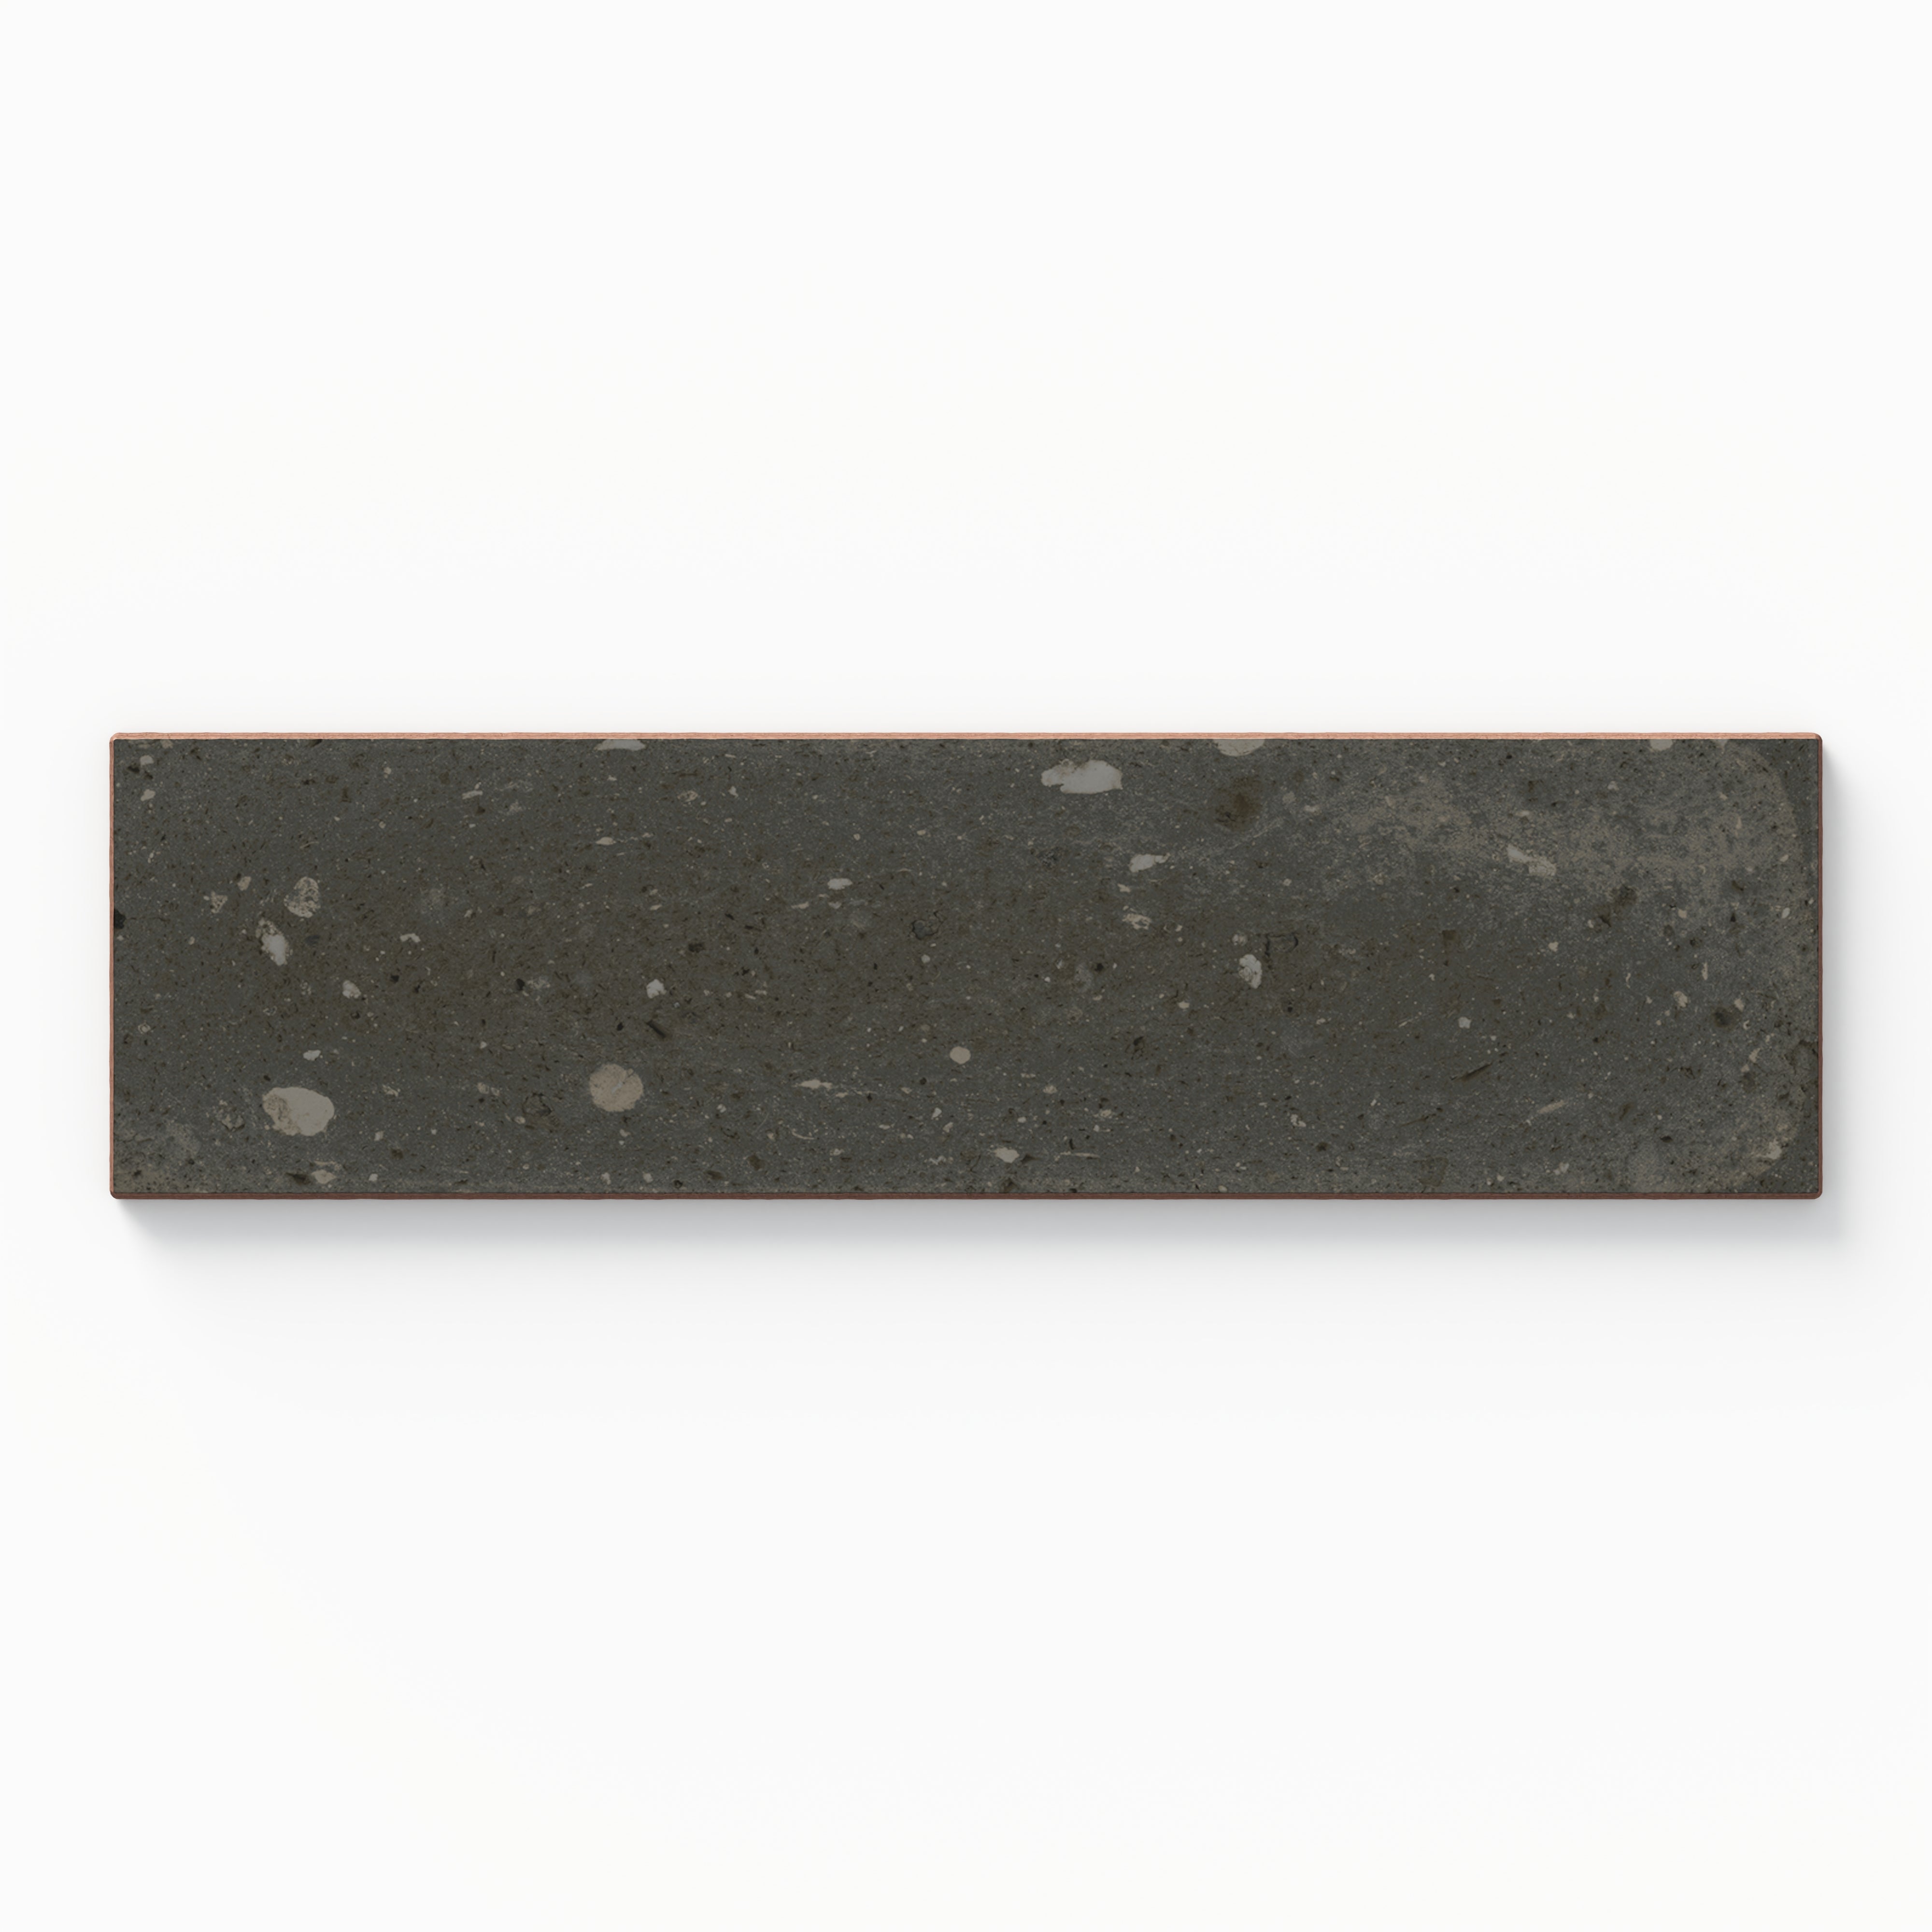 Marsden 3x10 Matte Ceramic Tile in Coal Sample